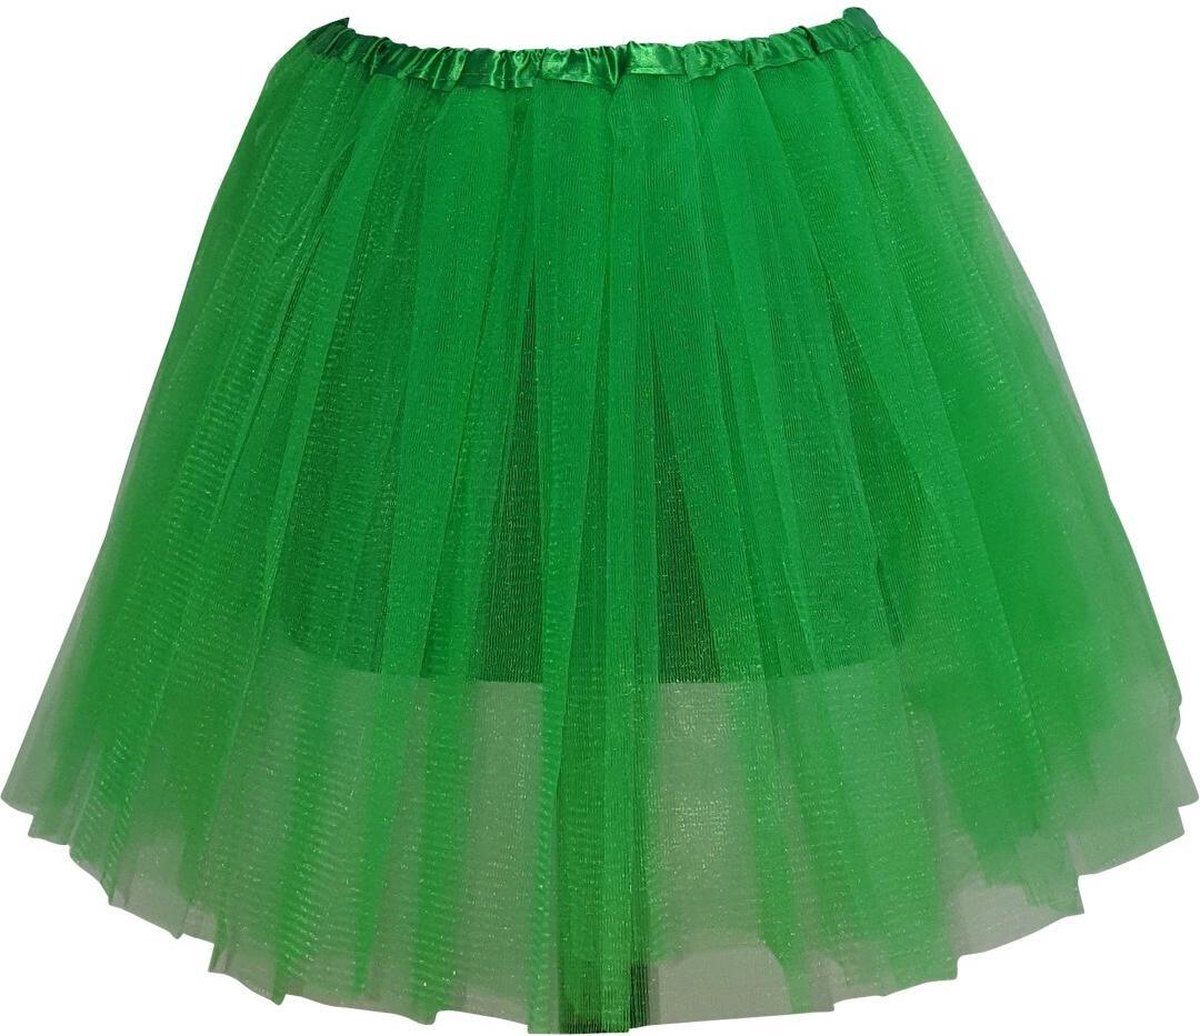 Tutu - Petticoat - Tule rokje - Groen - 40 cm - 3 lagen tule - Ballet rokje